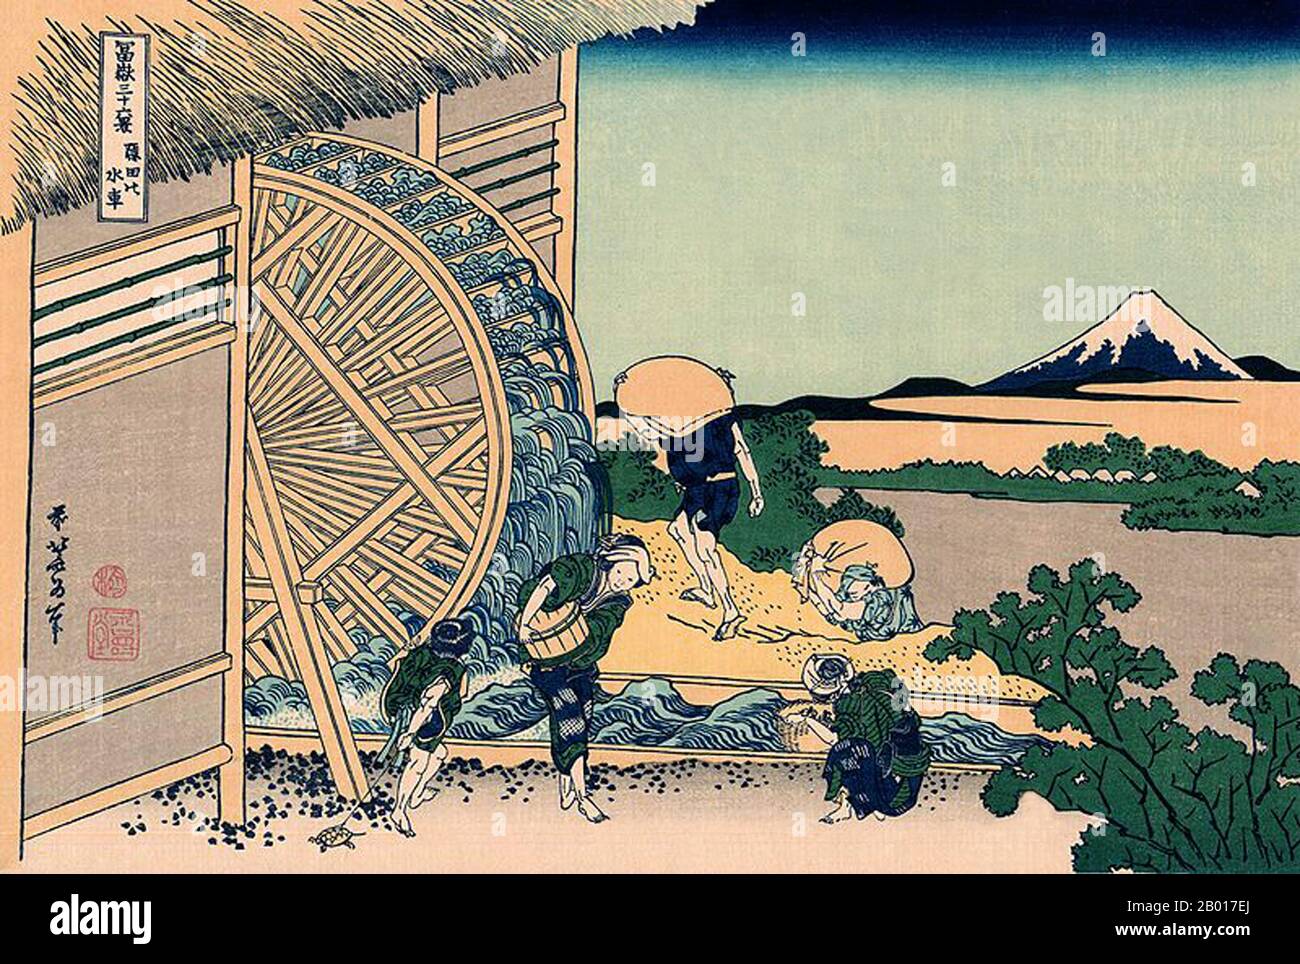 Japon: «la Waterwheel à Onden».Imprimé Ukiyo-e en blocs de bois de la série «trente-six vues du Mont Fuji» de Katsushika Hokusai (31 octobre 1760 - 10 mai 1849), 1830.«trente-six vues du Mont Fuji» est une série «ukiyo-e» de gravures sur bois de l’artiste japonais Katsushika Hokusai.La série représente le Mont Fuji dans différentes saisons et conditions météorologiques à partir de divers endroits et distances.Il se compose en fait de 46 tirages créés entre 1826 et 1833.Les 36 premiers ont été inclus dans la publication originale et, en raison de leur popularité, 10 autres ont été ajoutés après la publication originale. Banque D'Images